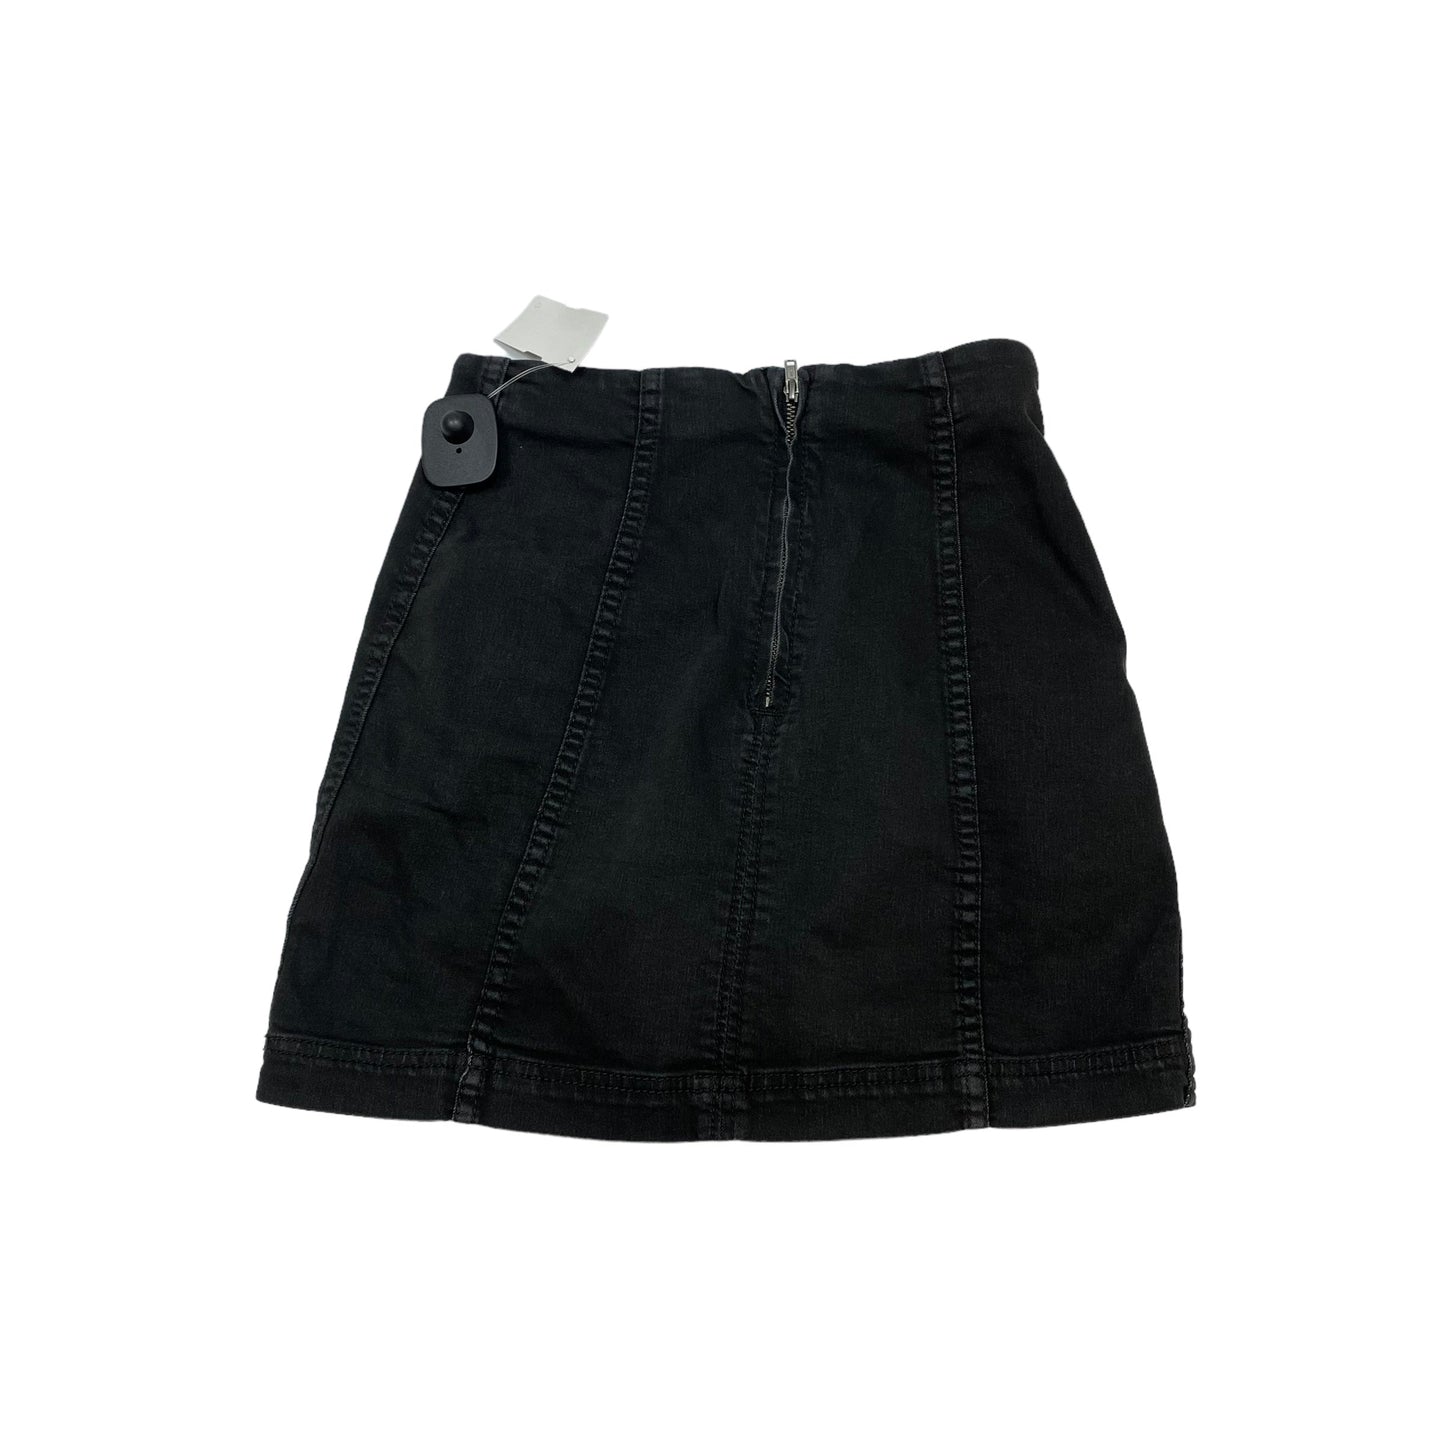 Black Denim Skirt Mini & Short Free People, Size Xs